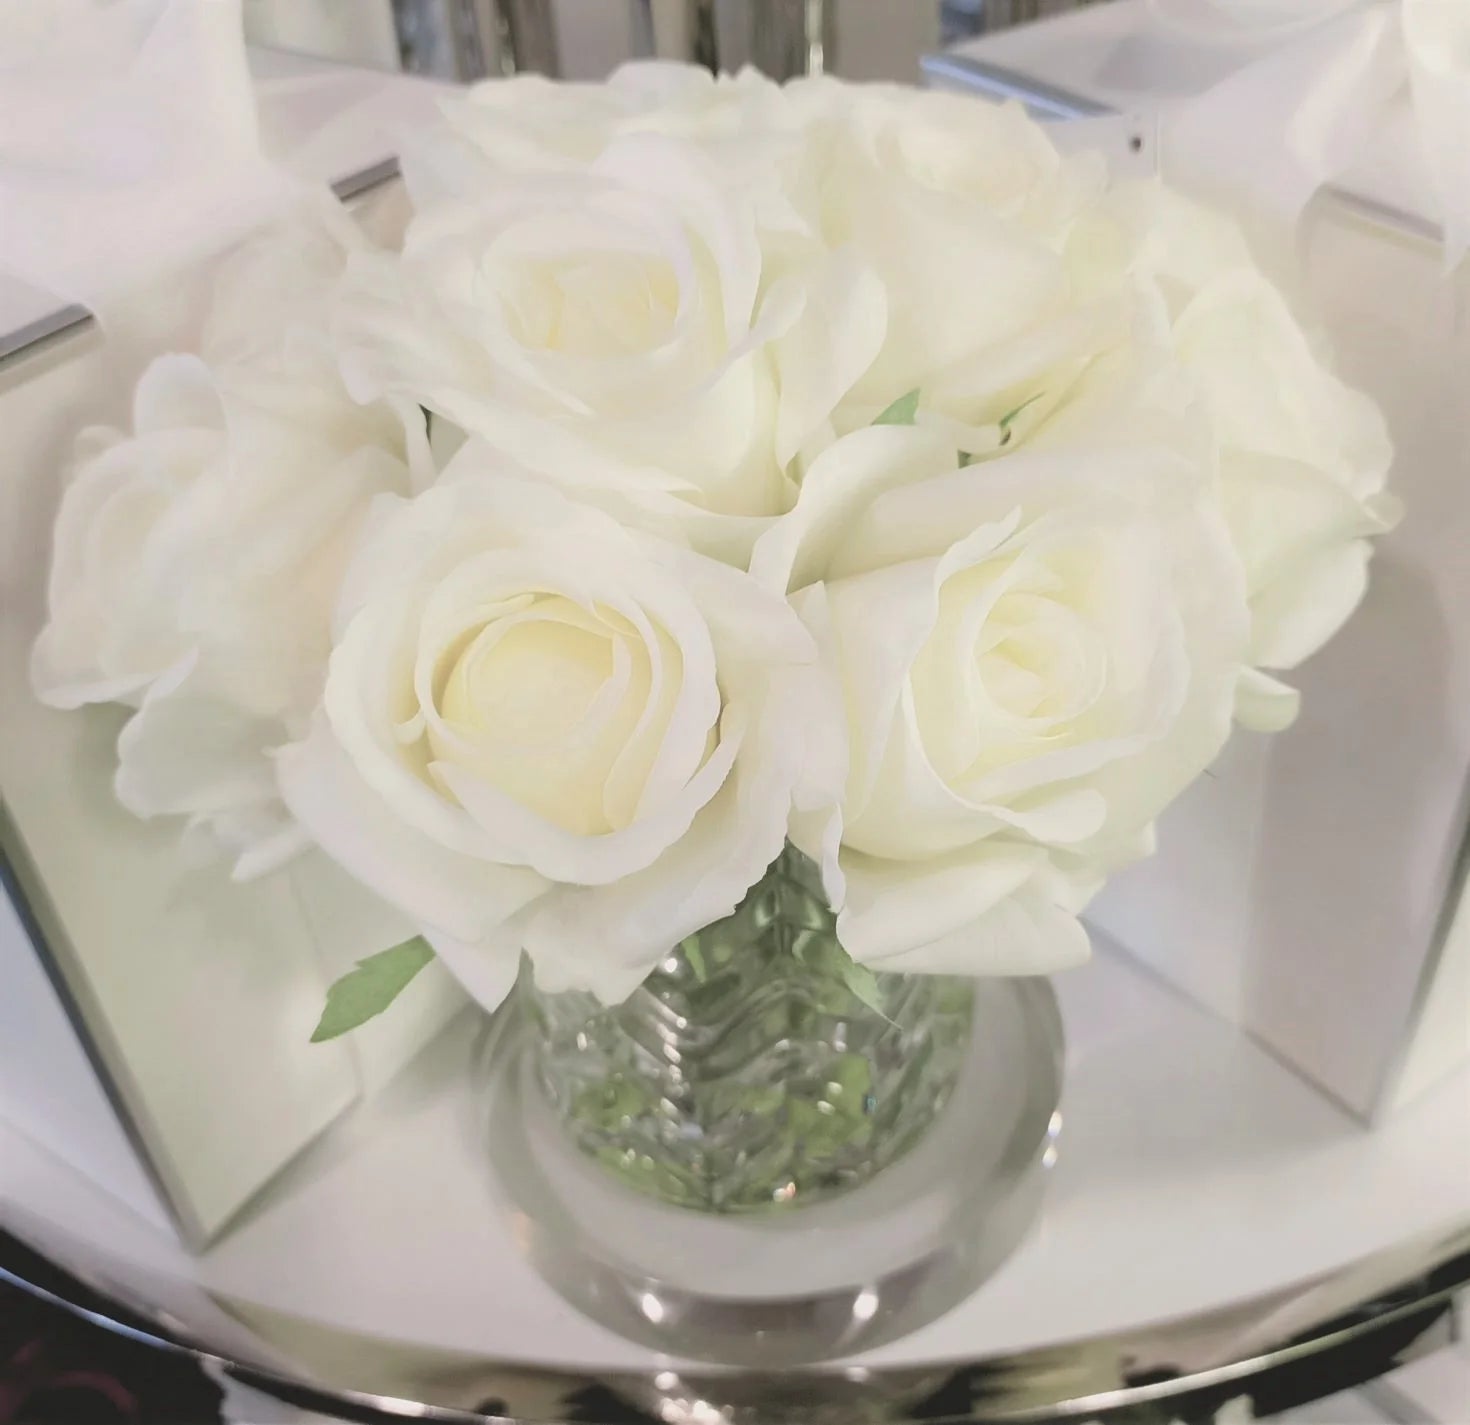 frontsicht auf weisse rosen in gemustertem glas auf einer runden glasscheibe.